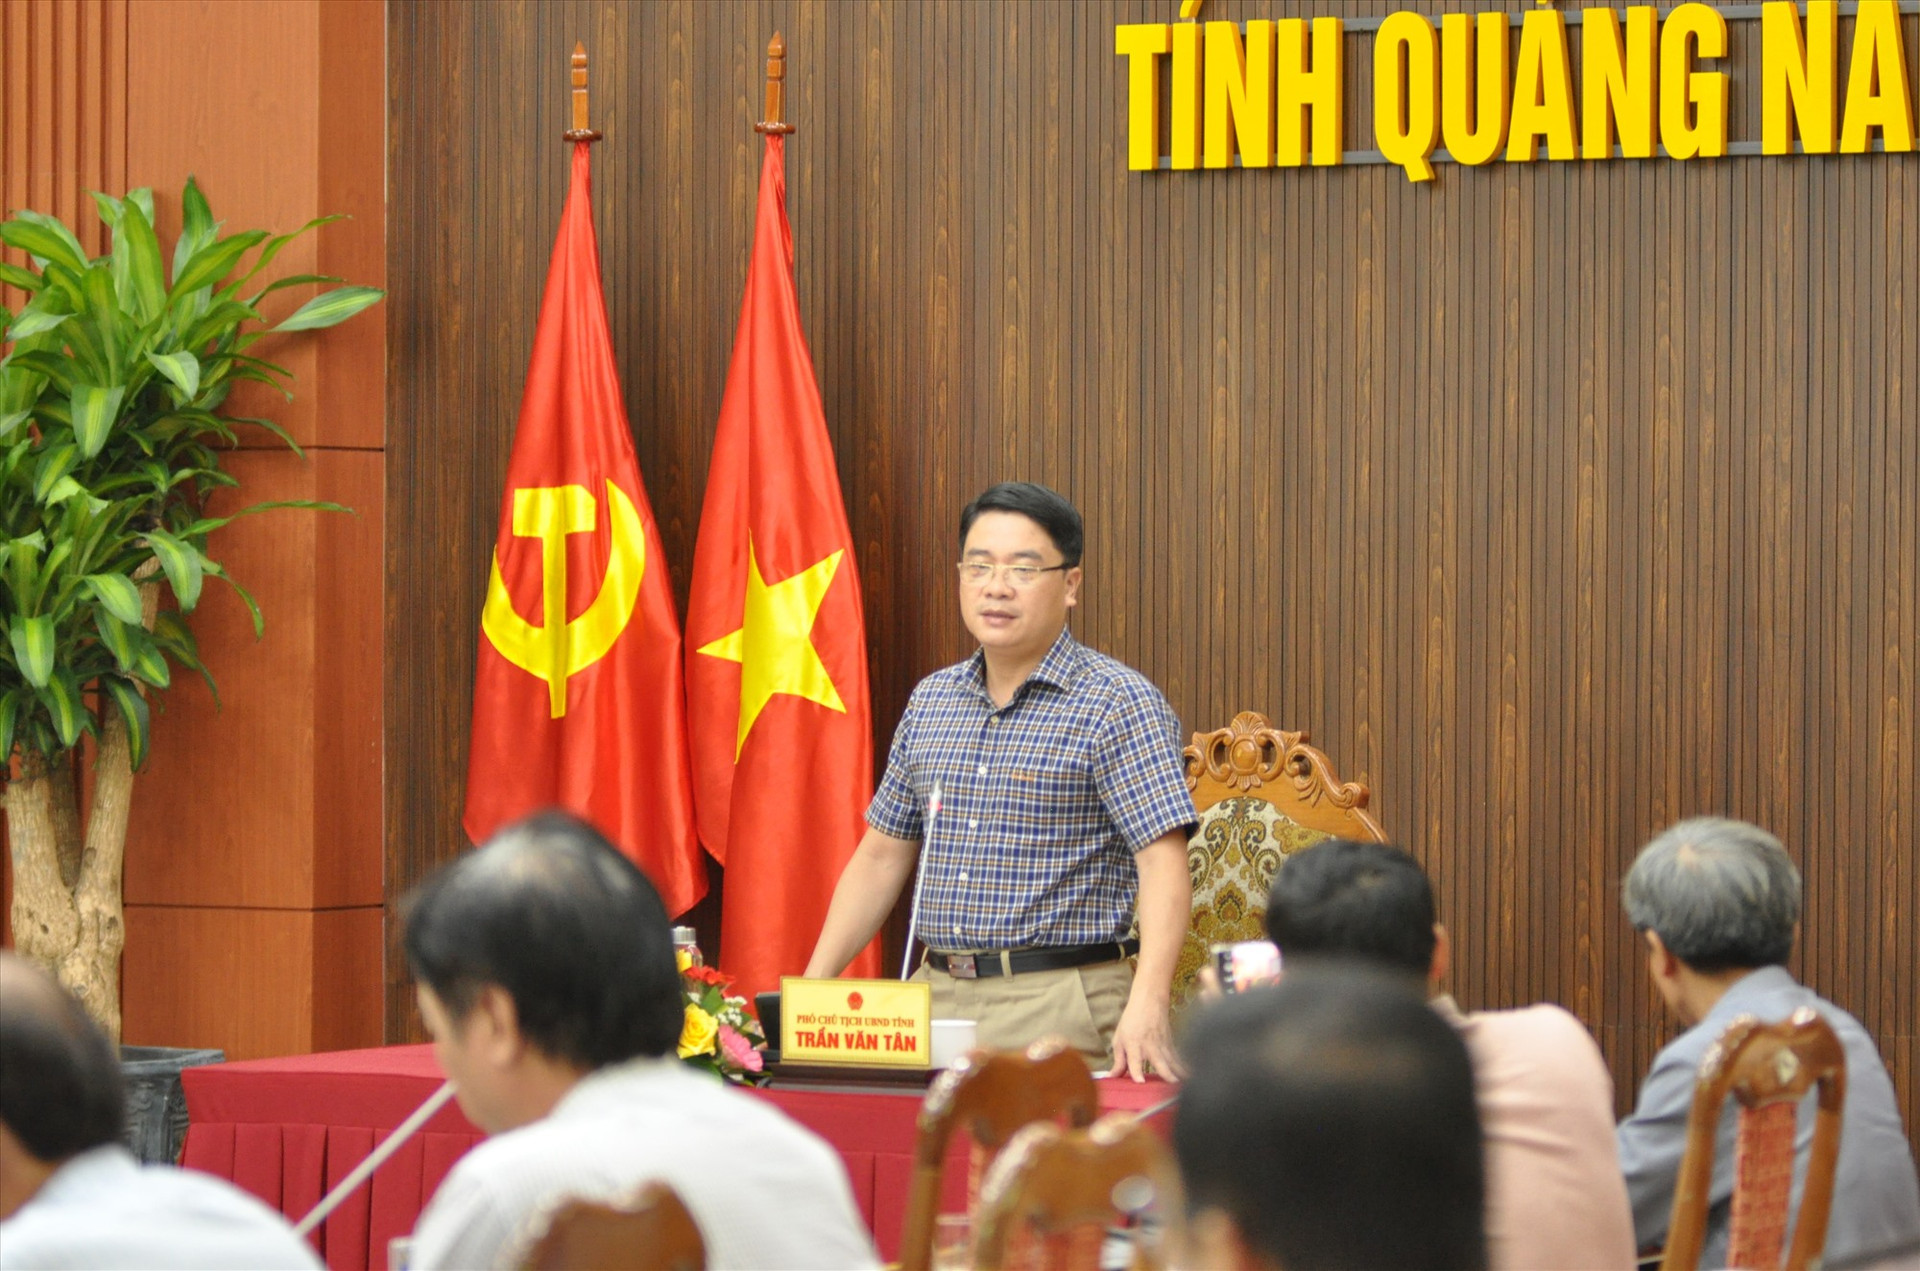 Phó Chủ tịch UBND tỉnh Trần Văn Tân chủ trì buổi họp báo. Ảnh: X.P